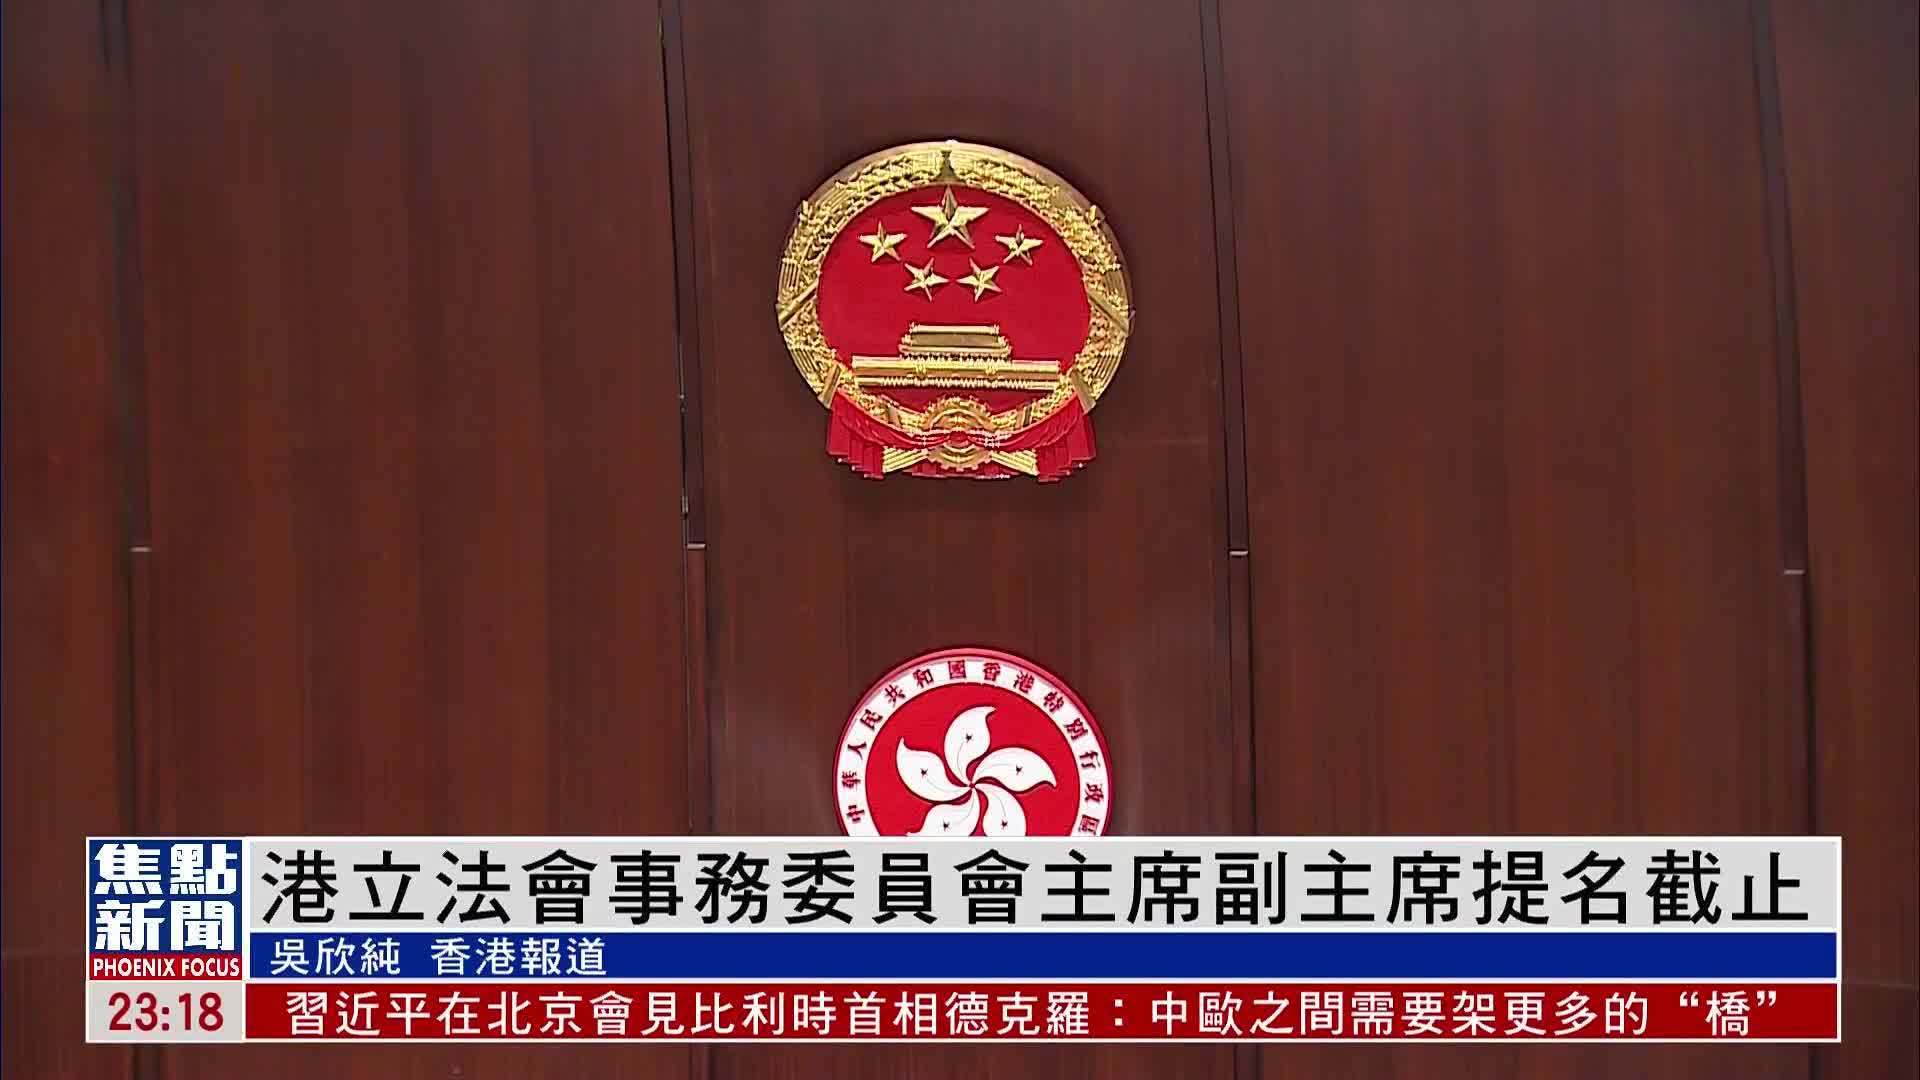 香港立法会事务委员会主席副主席提名截止